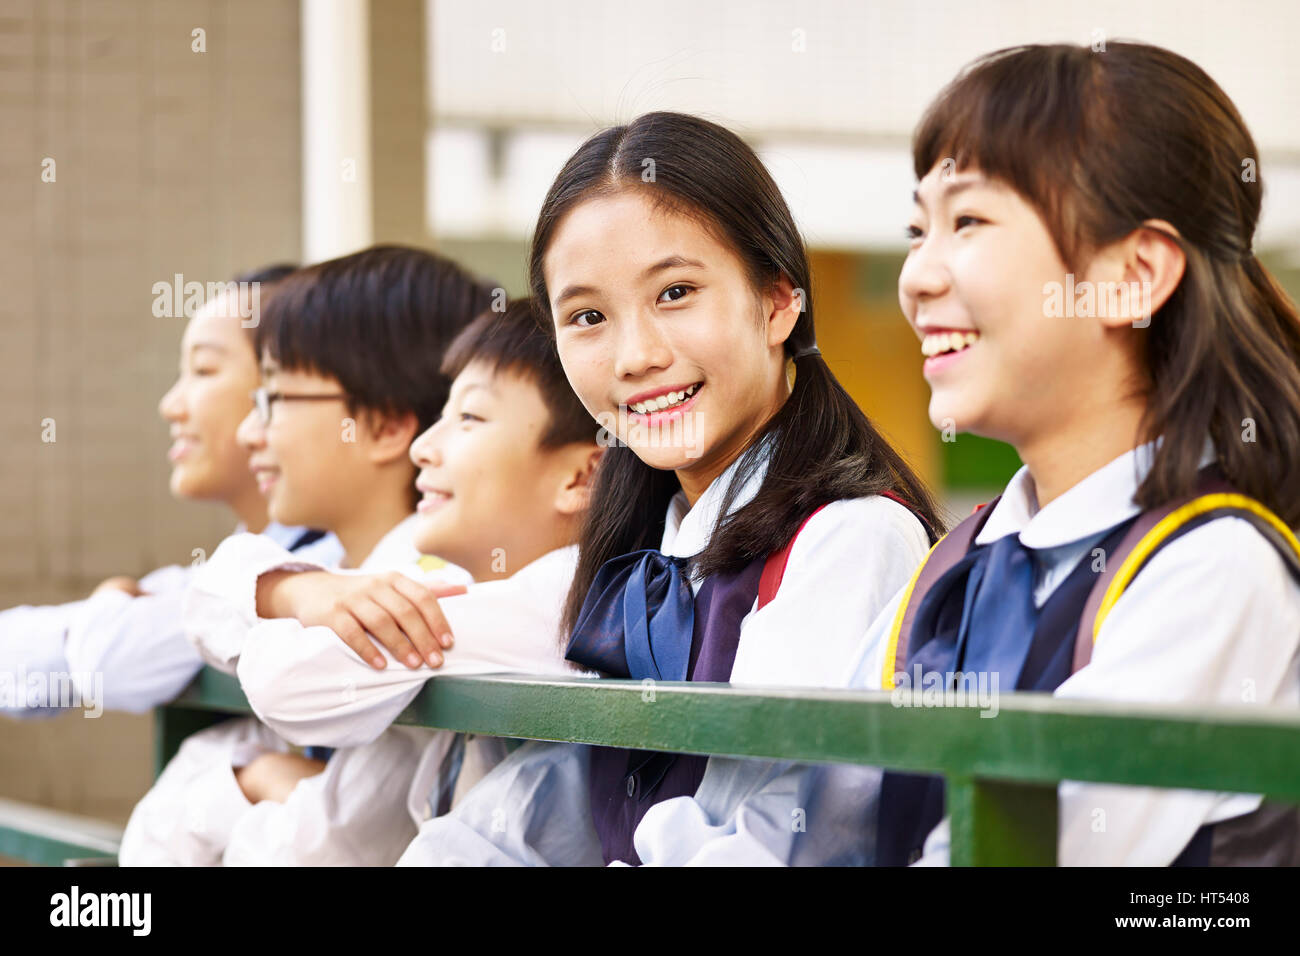 Grupo de niños de escuela primaria con una colegiala mirando a la cámara sonriendo. Foto de stock